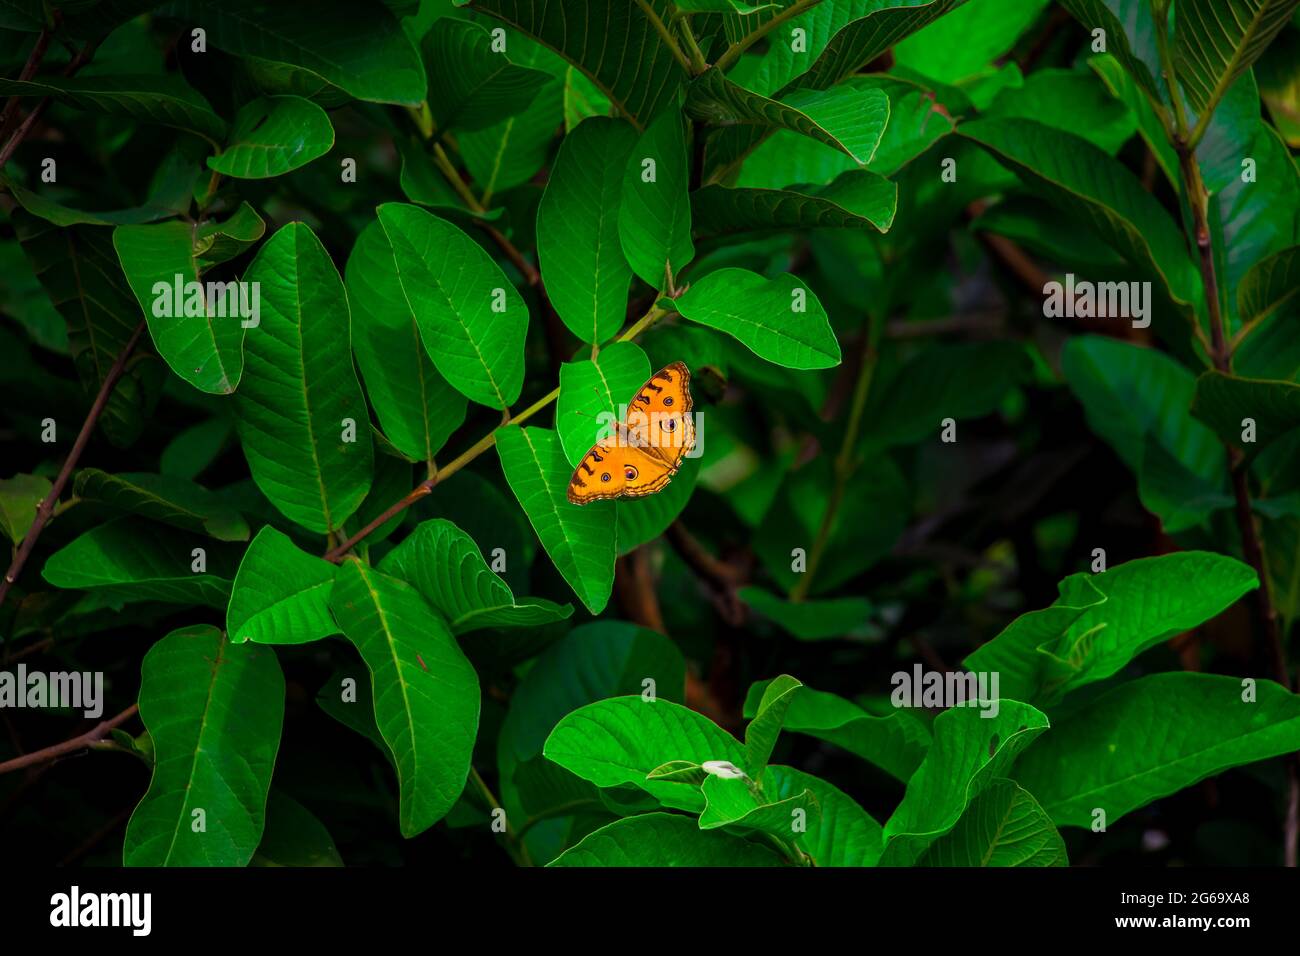 Ein schöner Schmetterling sitzt auf dem grünen Blatt. Ich habe dieses Bild am 11. August 2018 aus Dhaka, Bangladesch, Südasien aufgenommen Stockfoto